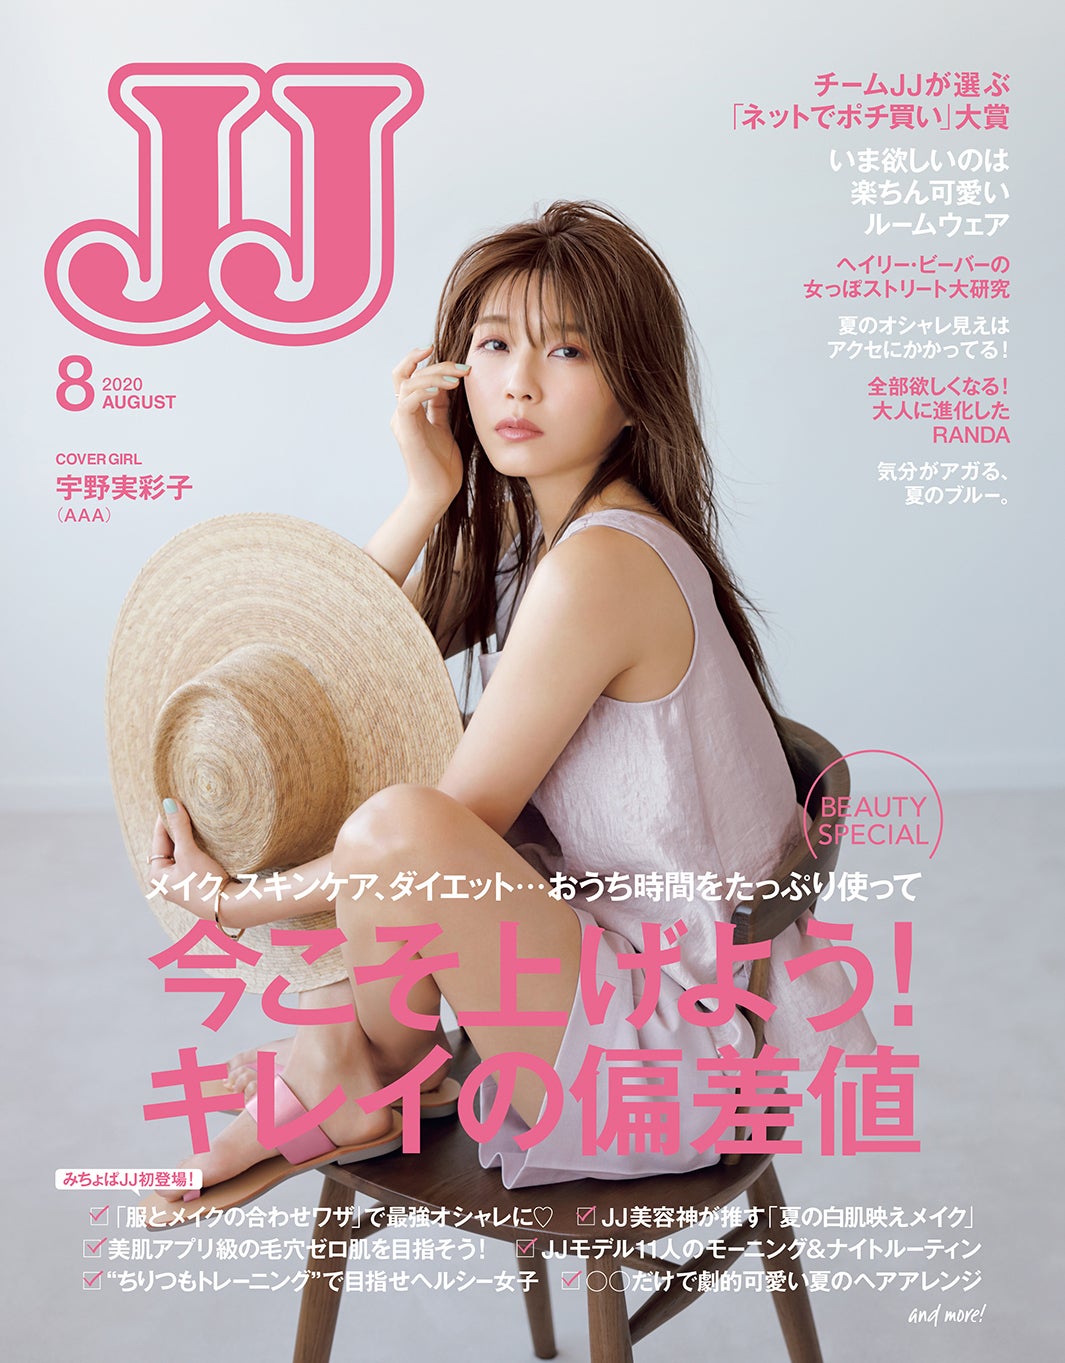 画像9/10) AAA宇野実彩子「JJ」初表紙で変わらぬ美貌 美の名言が続々登場 - モデルプレス